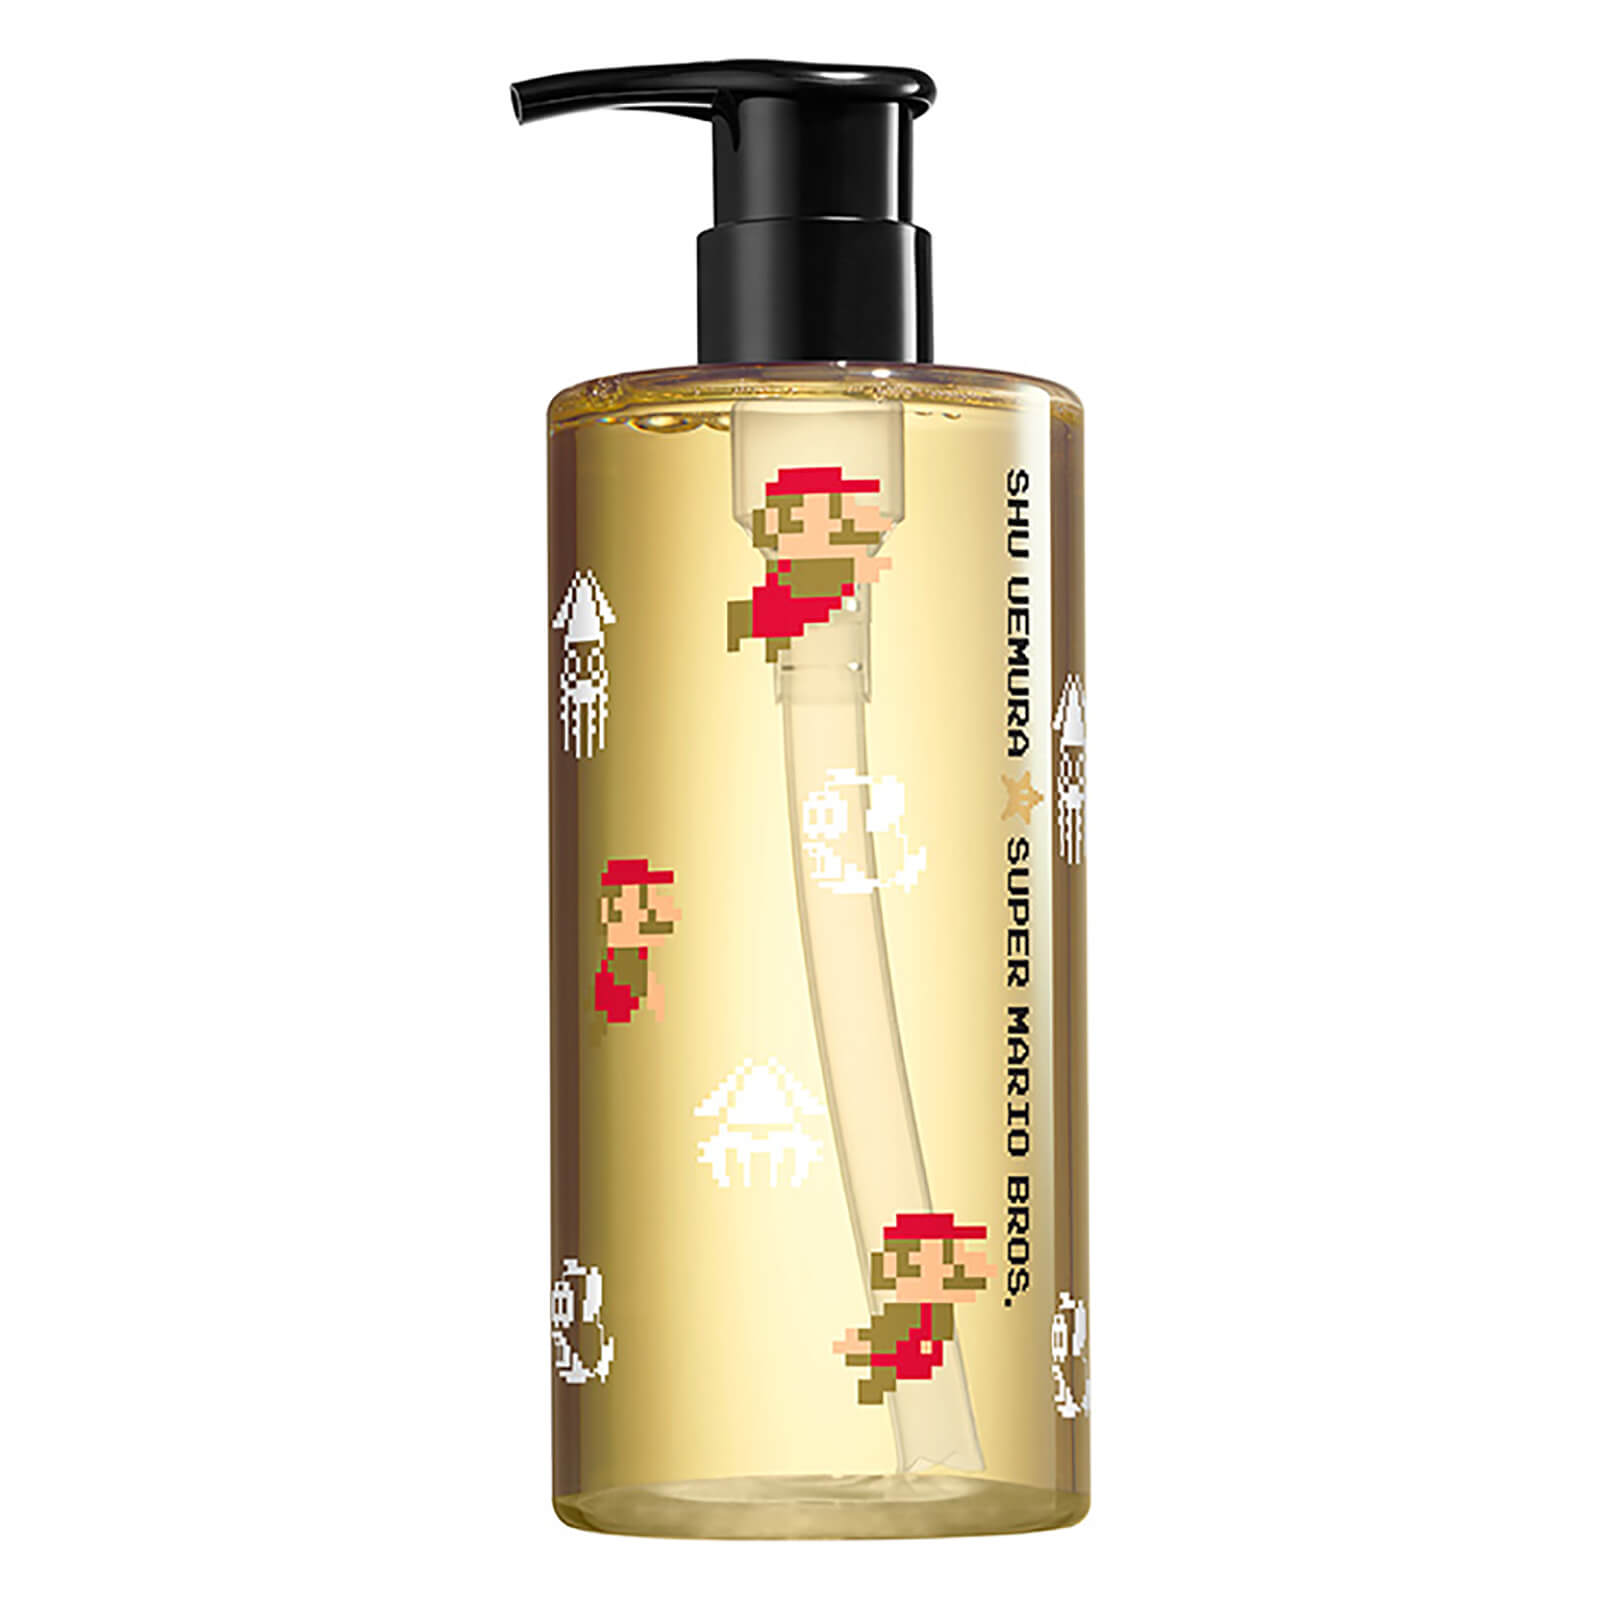 Shu Uemura Art of Hair Limited Edition Super Mario Cleansing Oil Shampoo 400ml